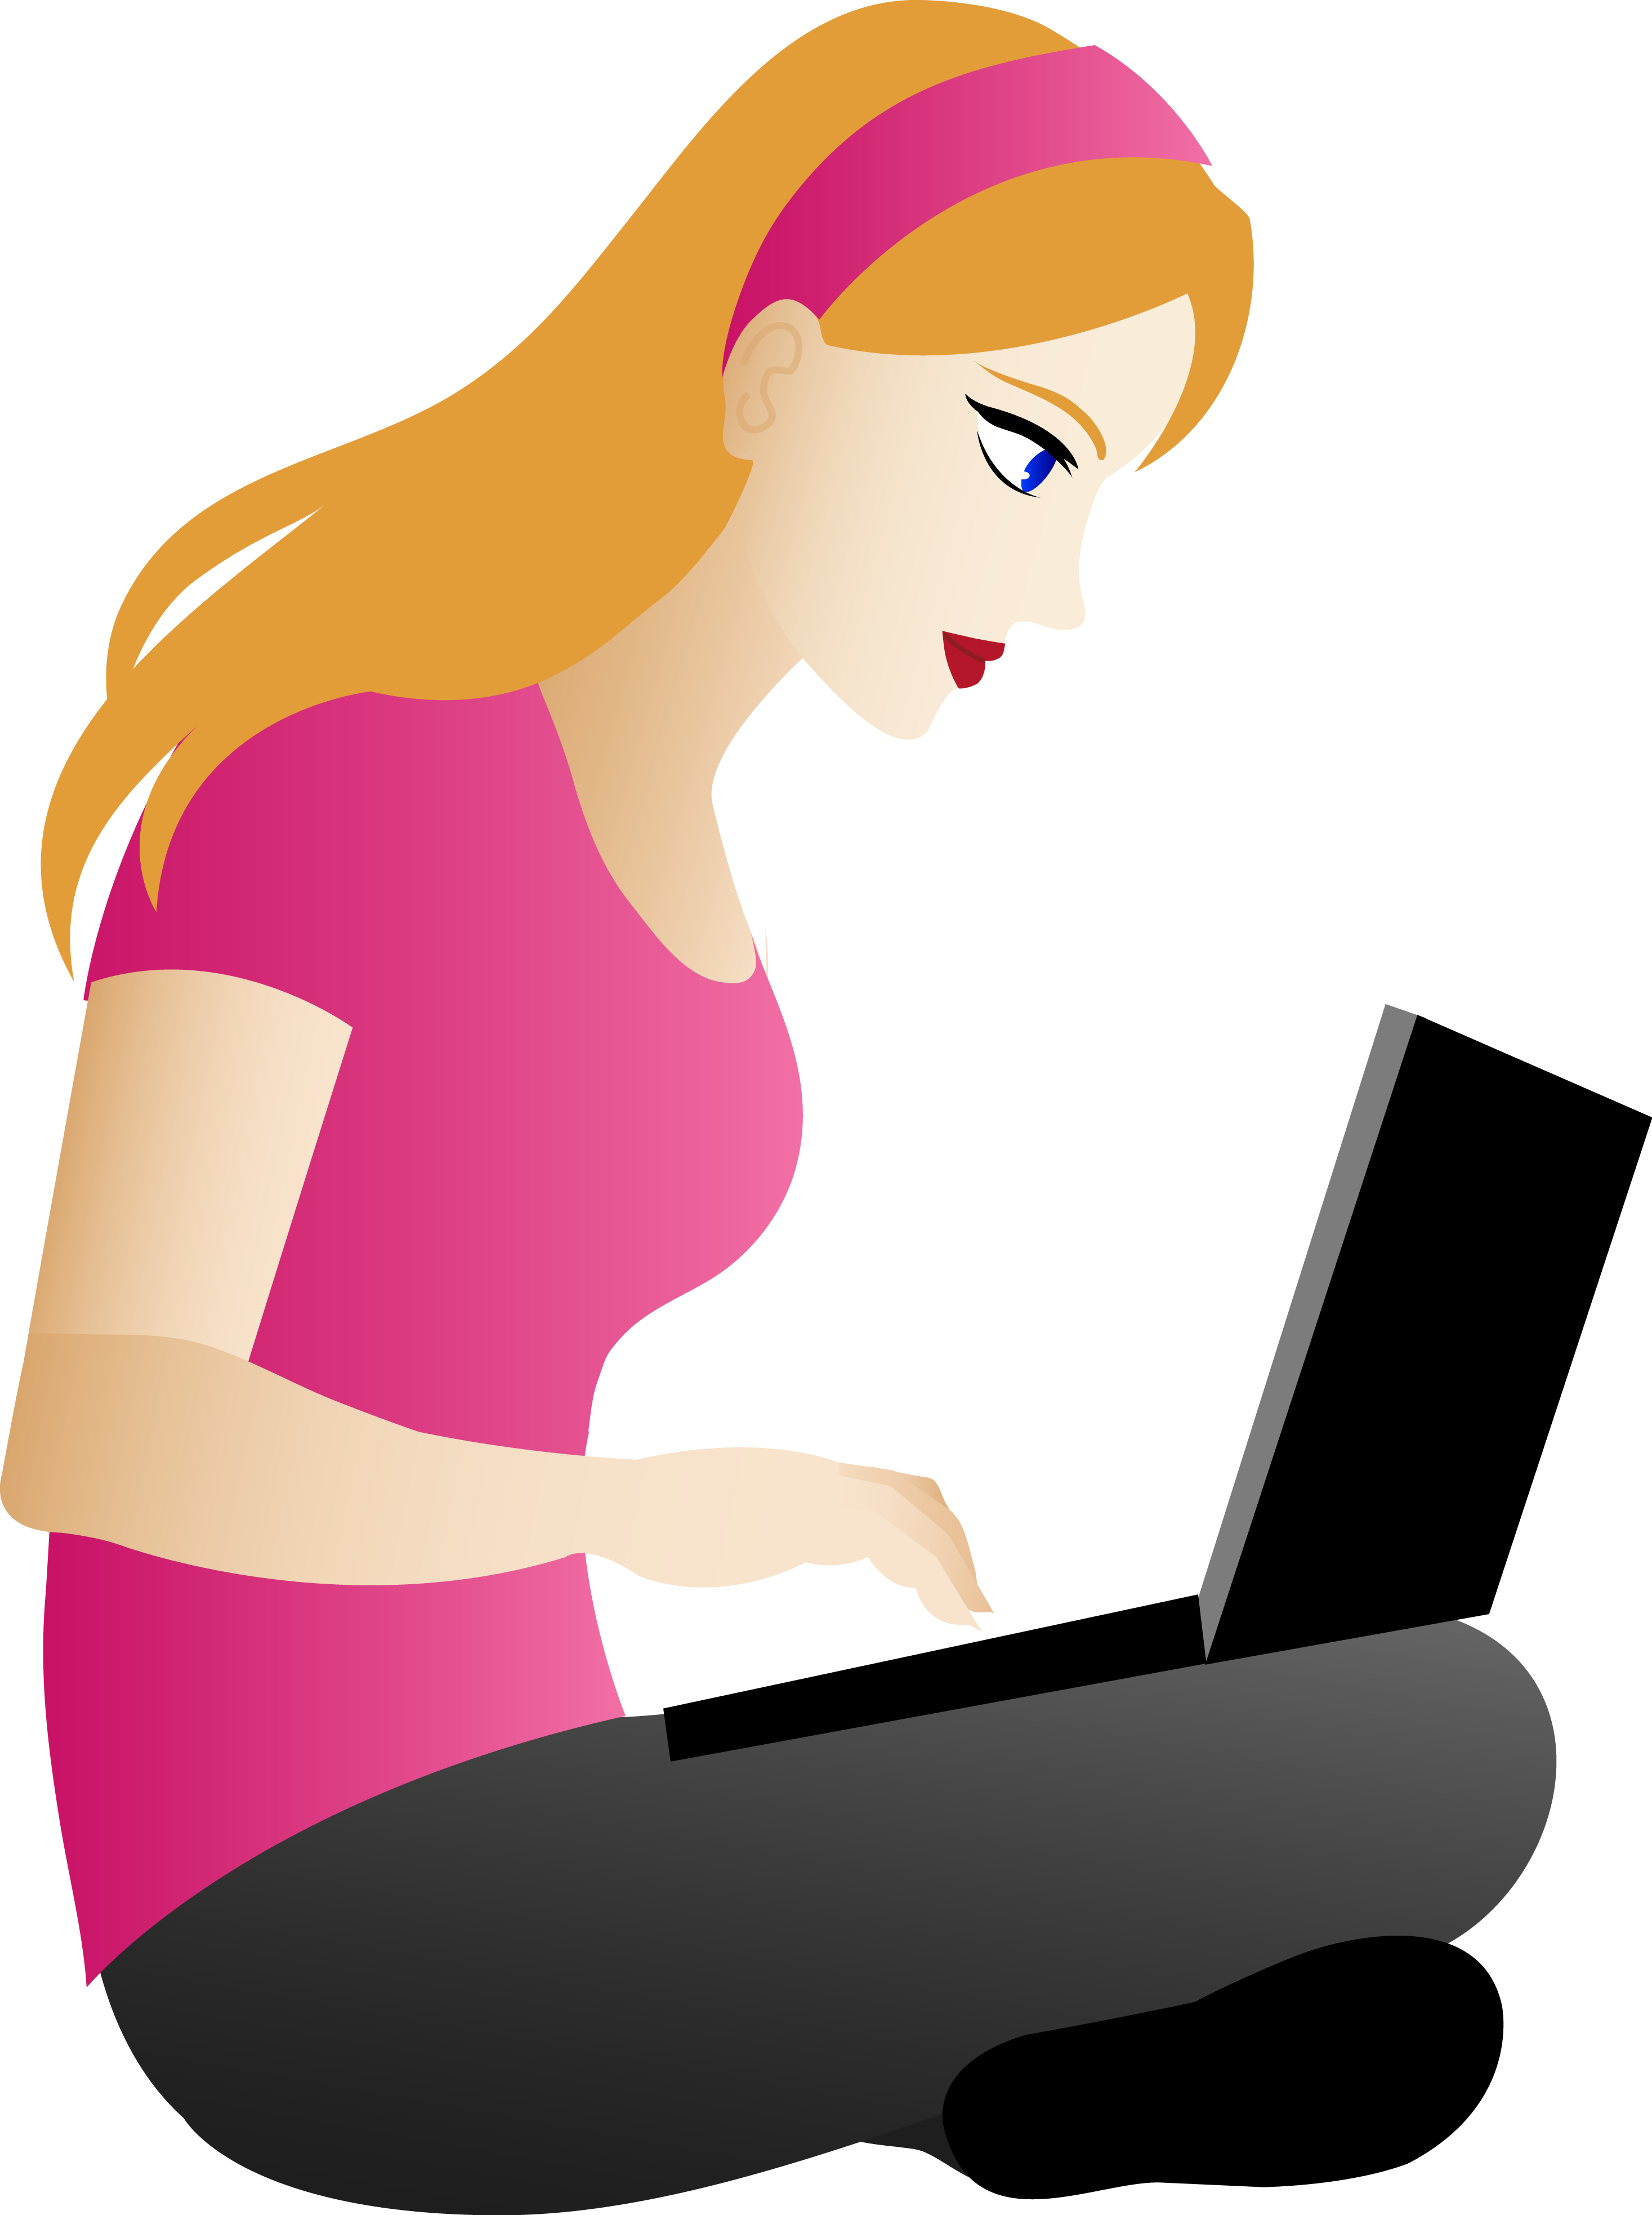 Сижу у мамы на работе. Человек за компьютером. Девушка за компьютером рисунок. Женщина сидит за компьютером. Девушка сидит за компьютером.